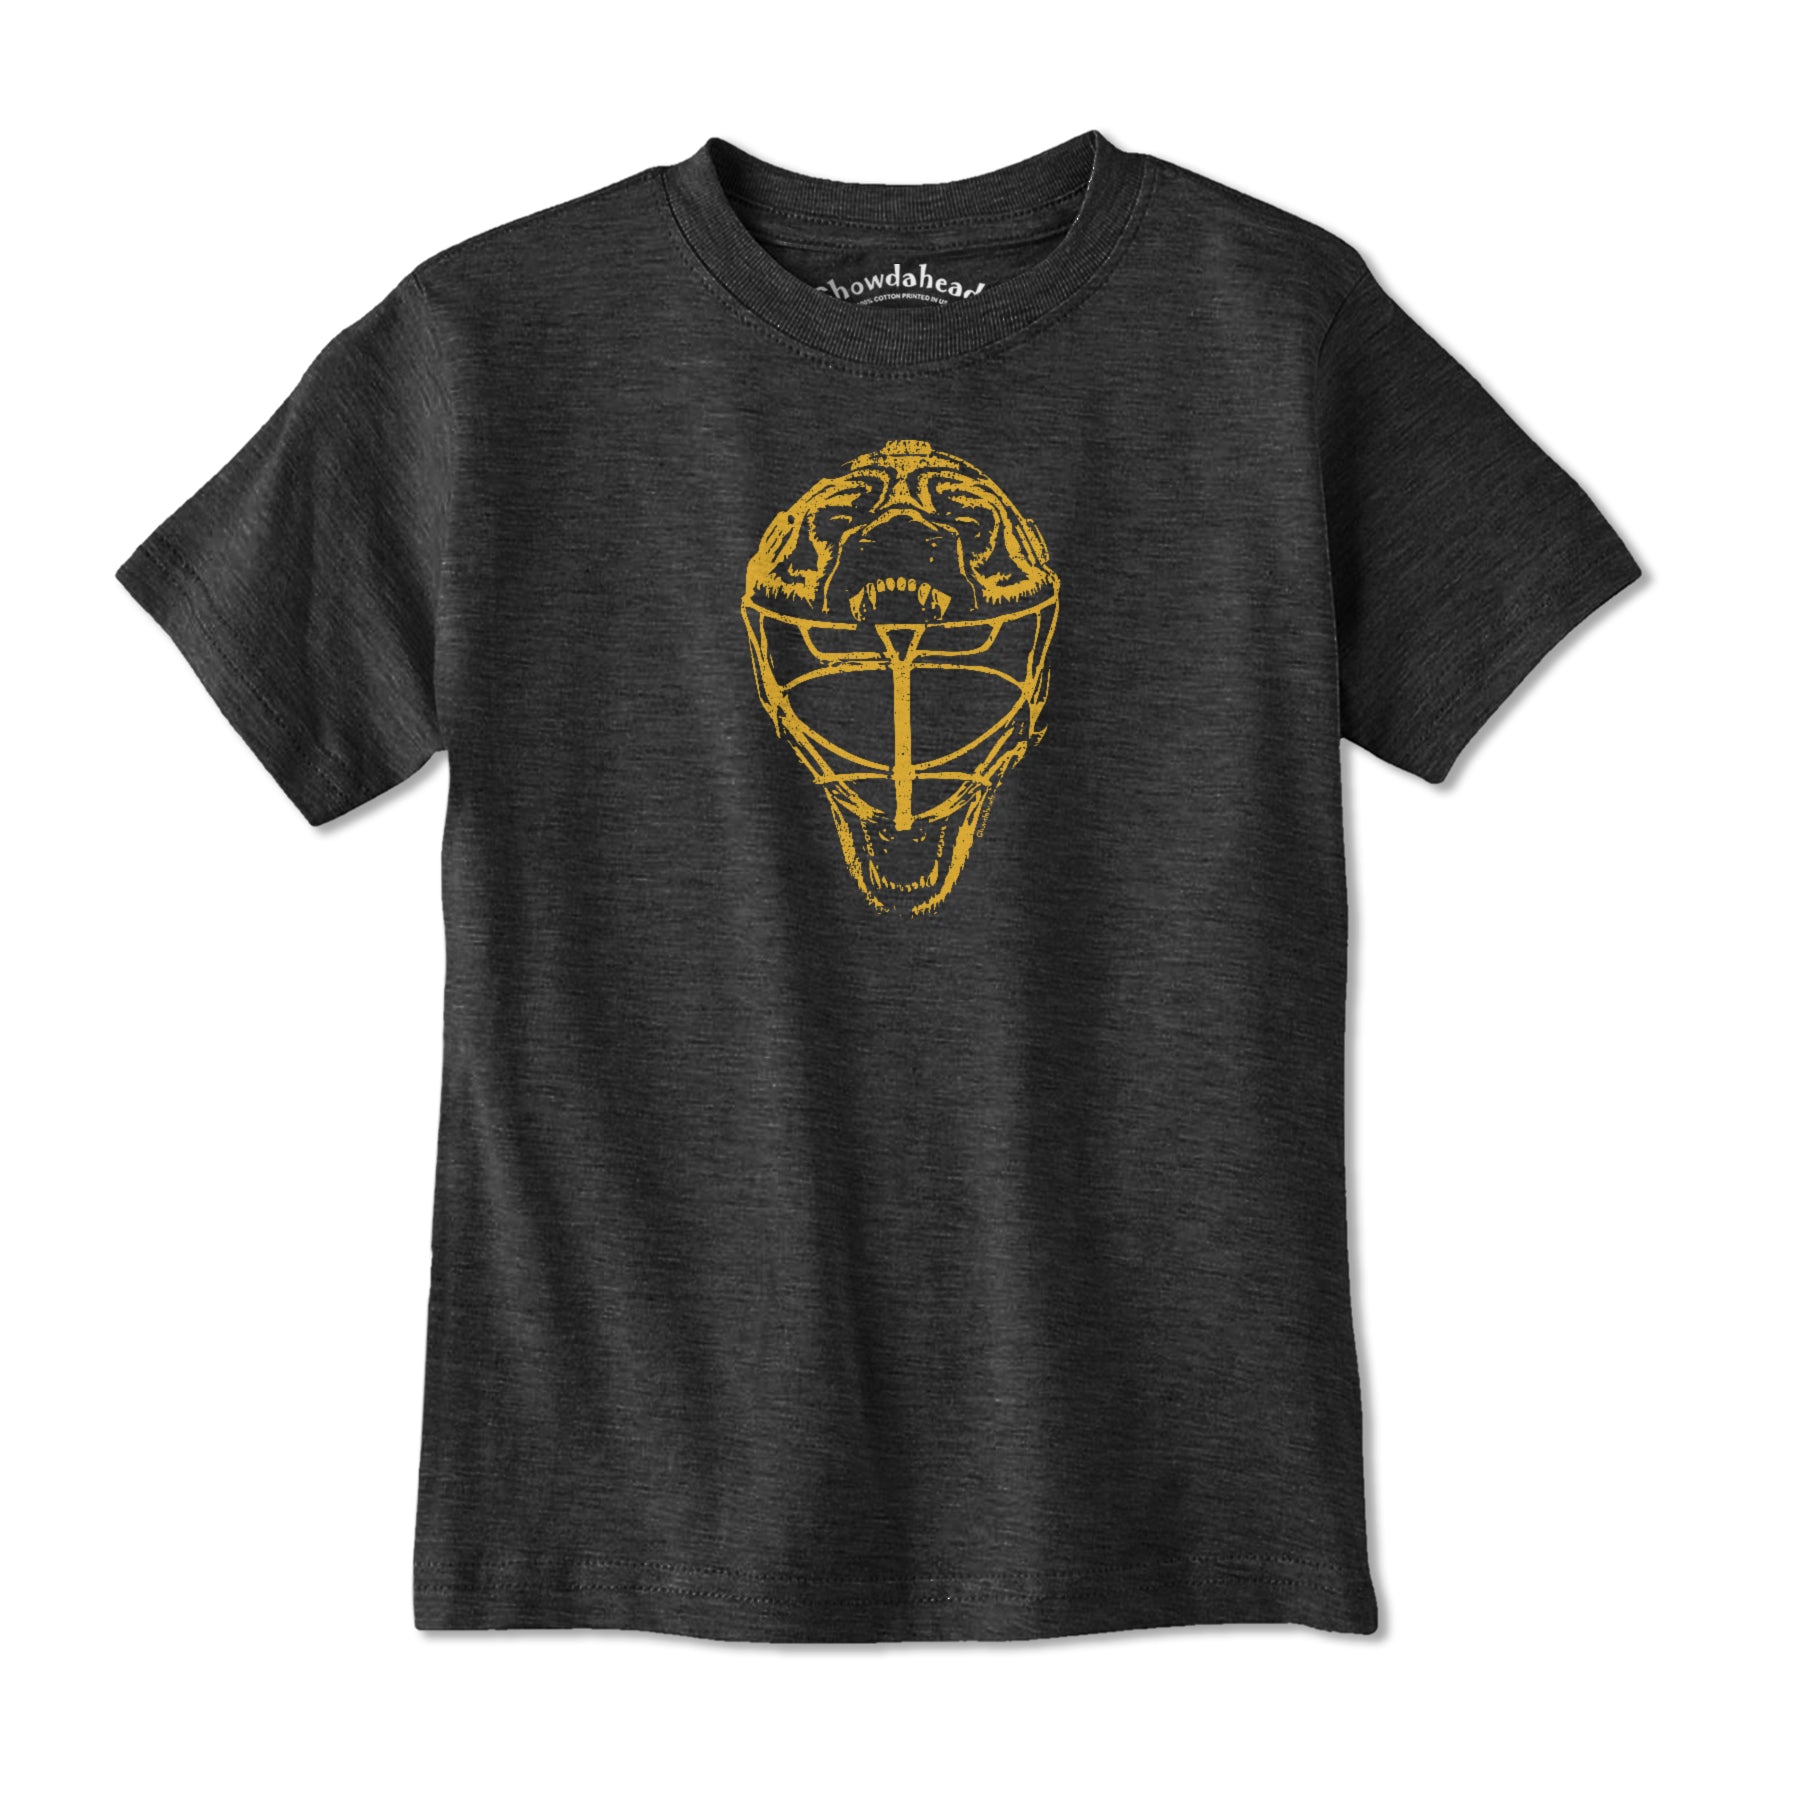 Boston Vintage Goalie Mask Youth T-Shirt - Chowdaheadz